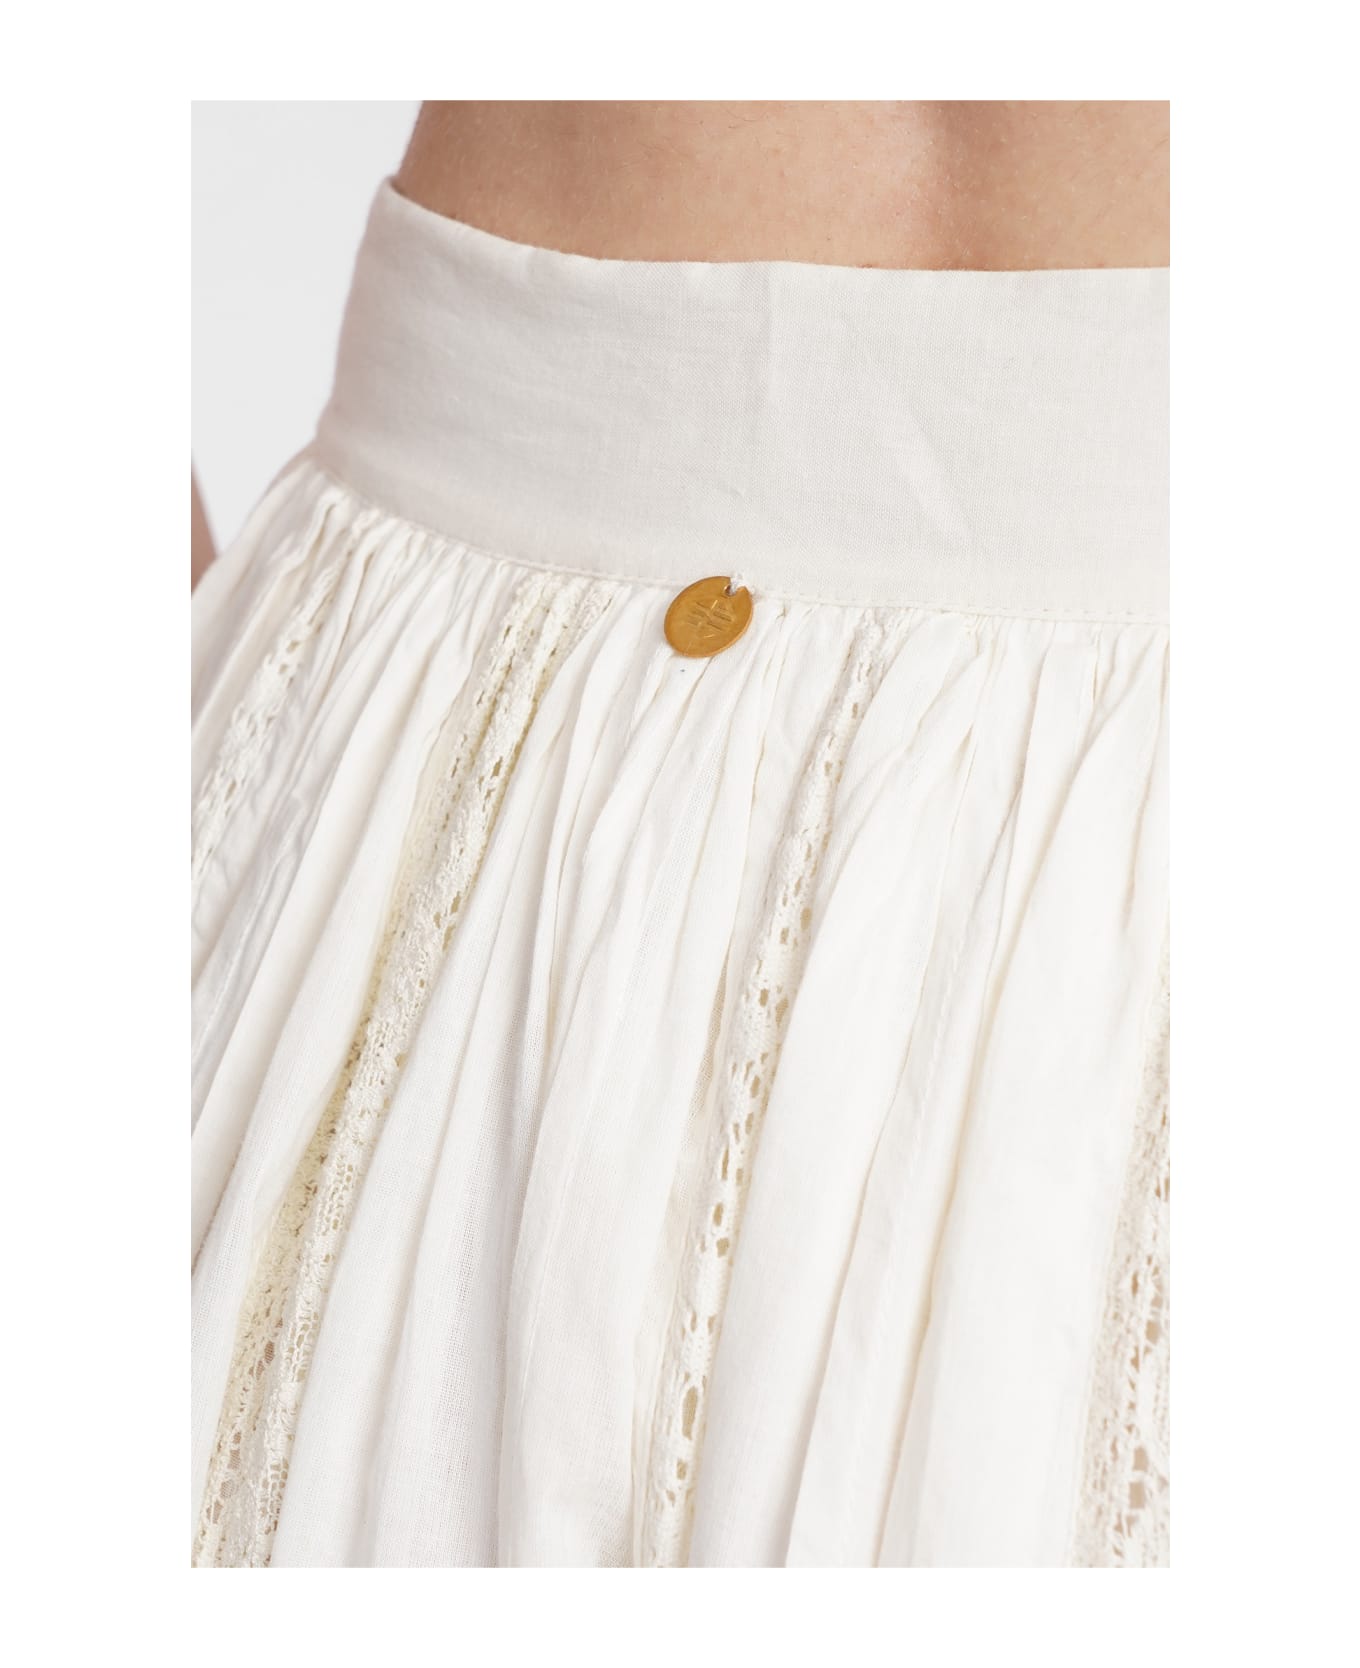 Antik Batik Aloha Skirt In Beige Cotton - CREAM